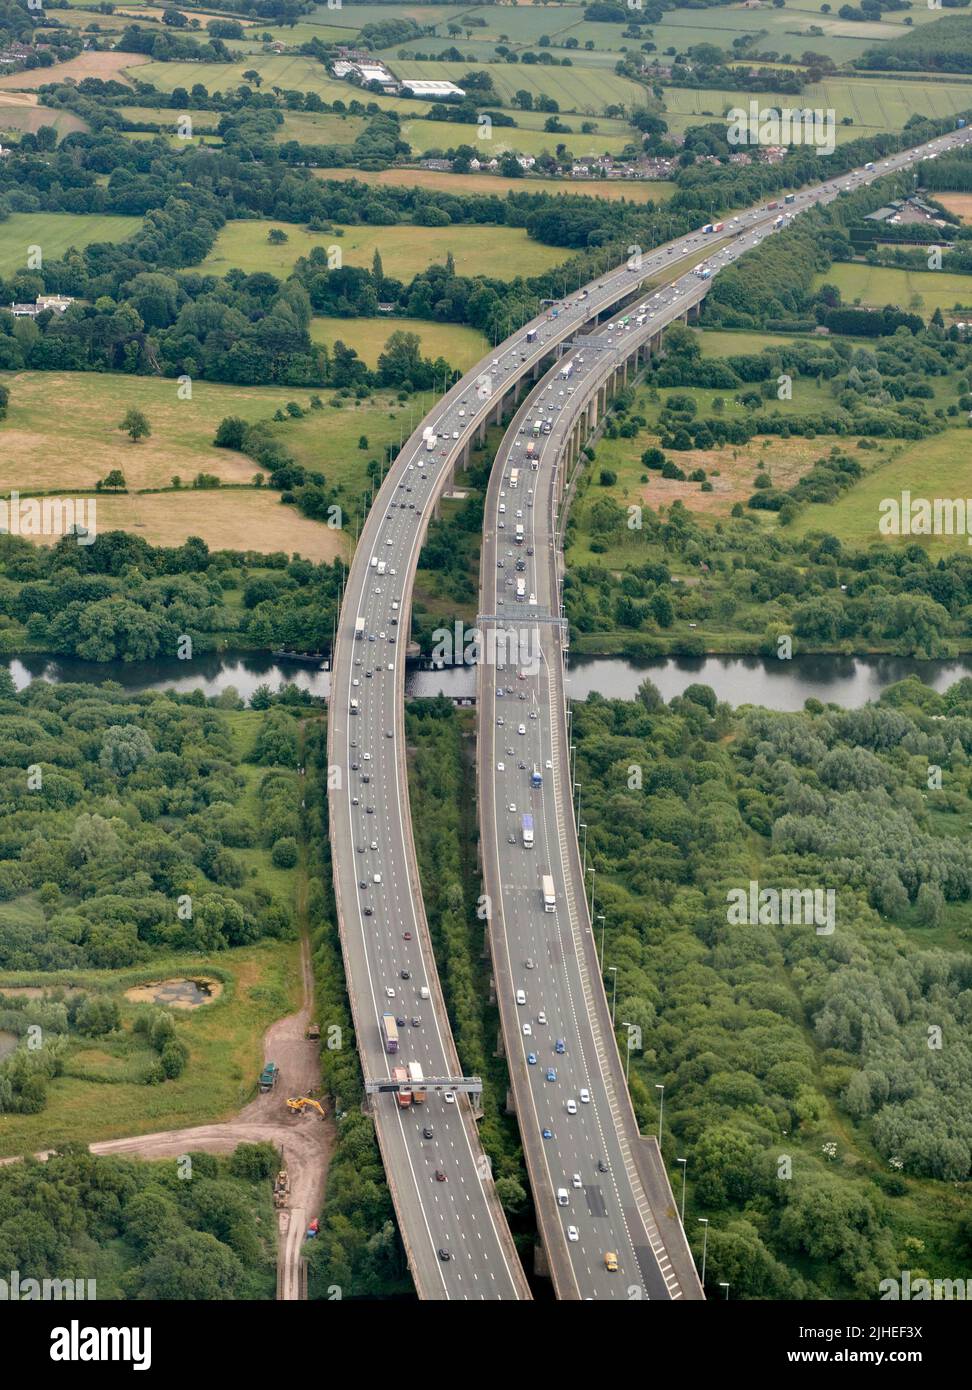 Una fotografía aérea del viaducto Thelwell, tomando la autopista M6 sobre el canal de barcos de Manchester, cerca de Warrington, Cheshire, noroeste de Inglaterra, Reino Unido Foto de stock